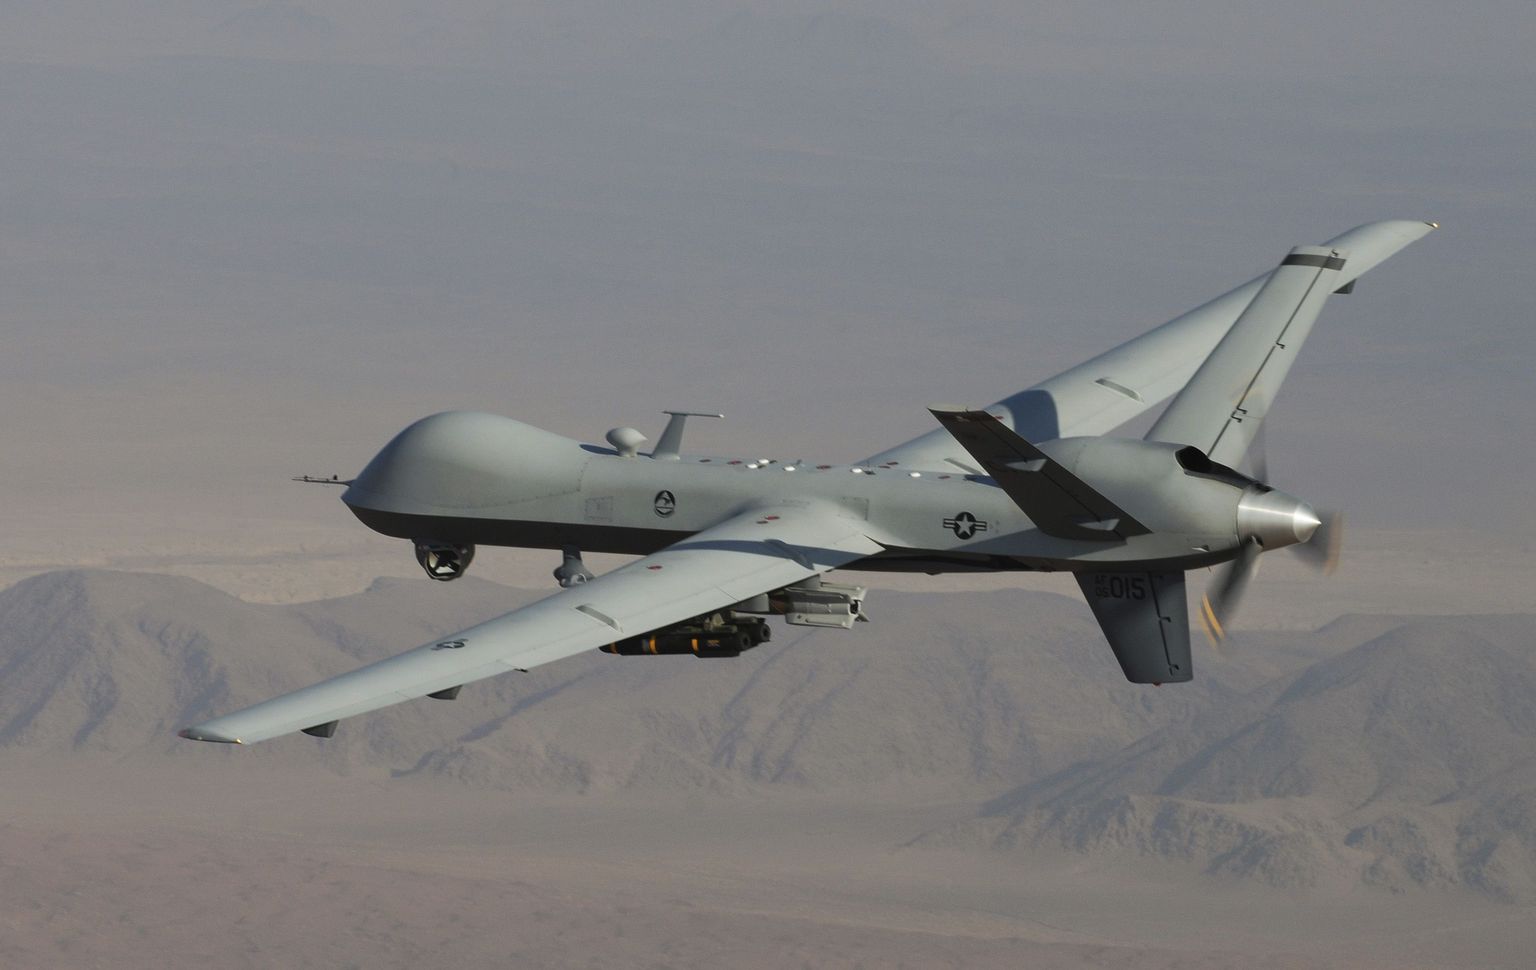 Ameerika Ühendriikide droon (MQ-9 Reaper), millel on võimekus tulistada laskemoona laserjuhtimisega ja ka Hellfire rakette.